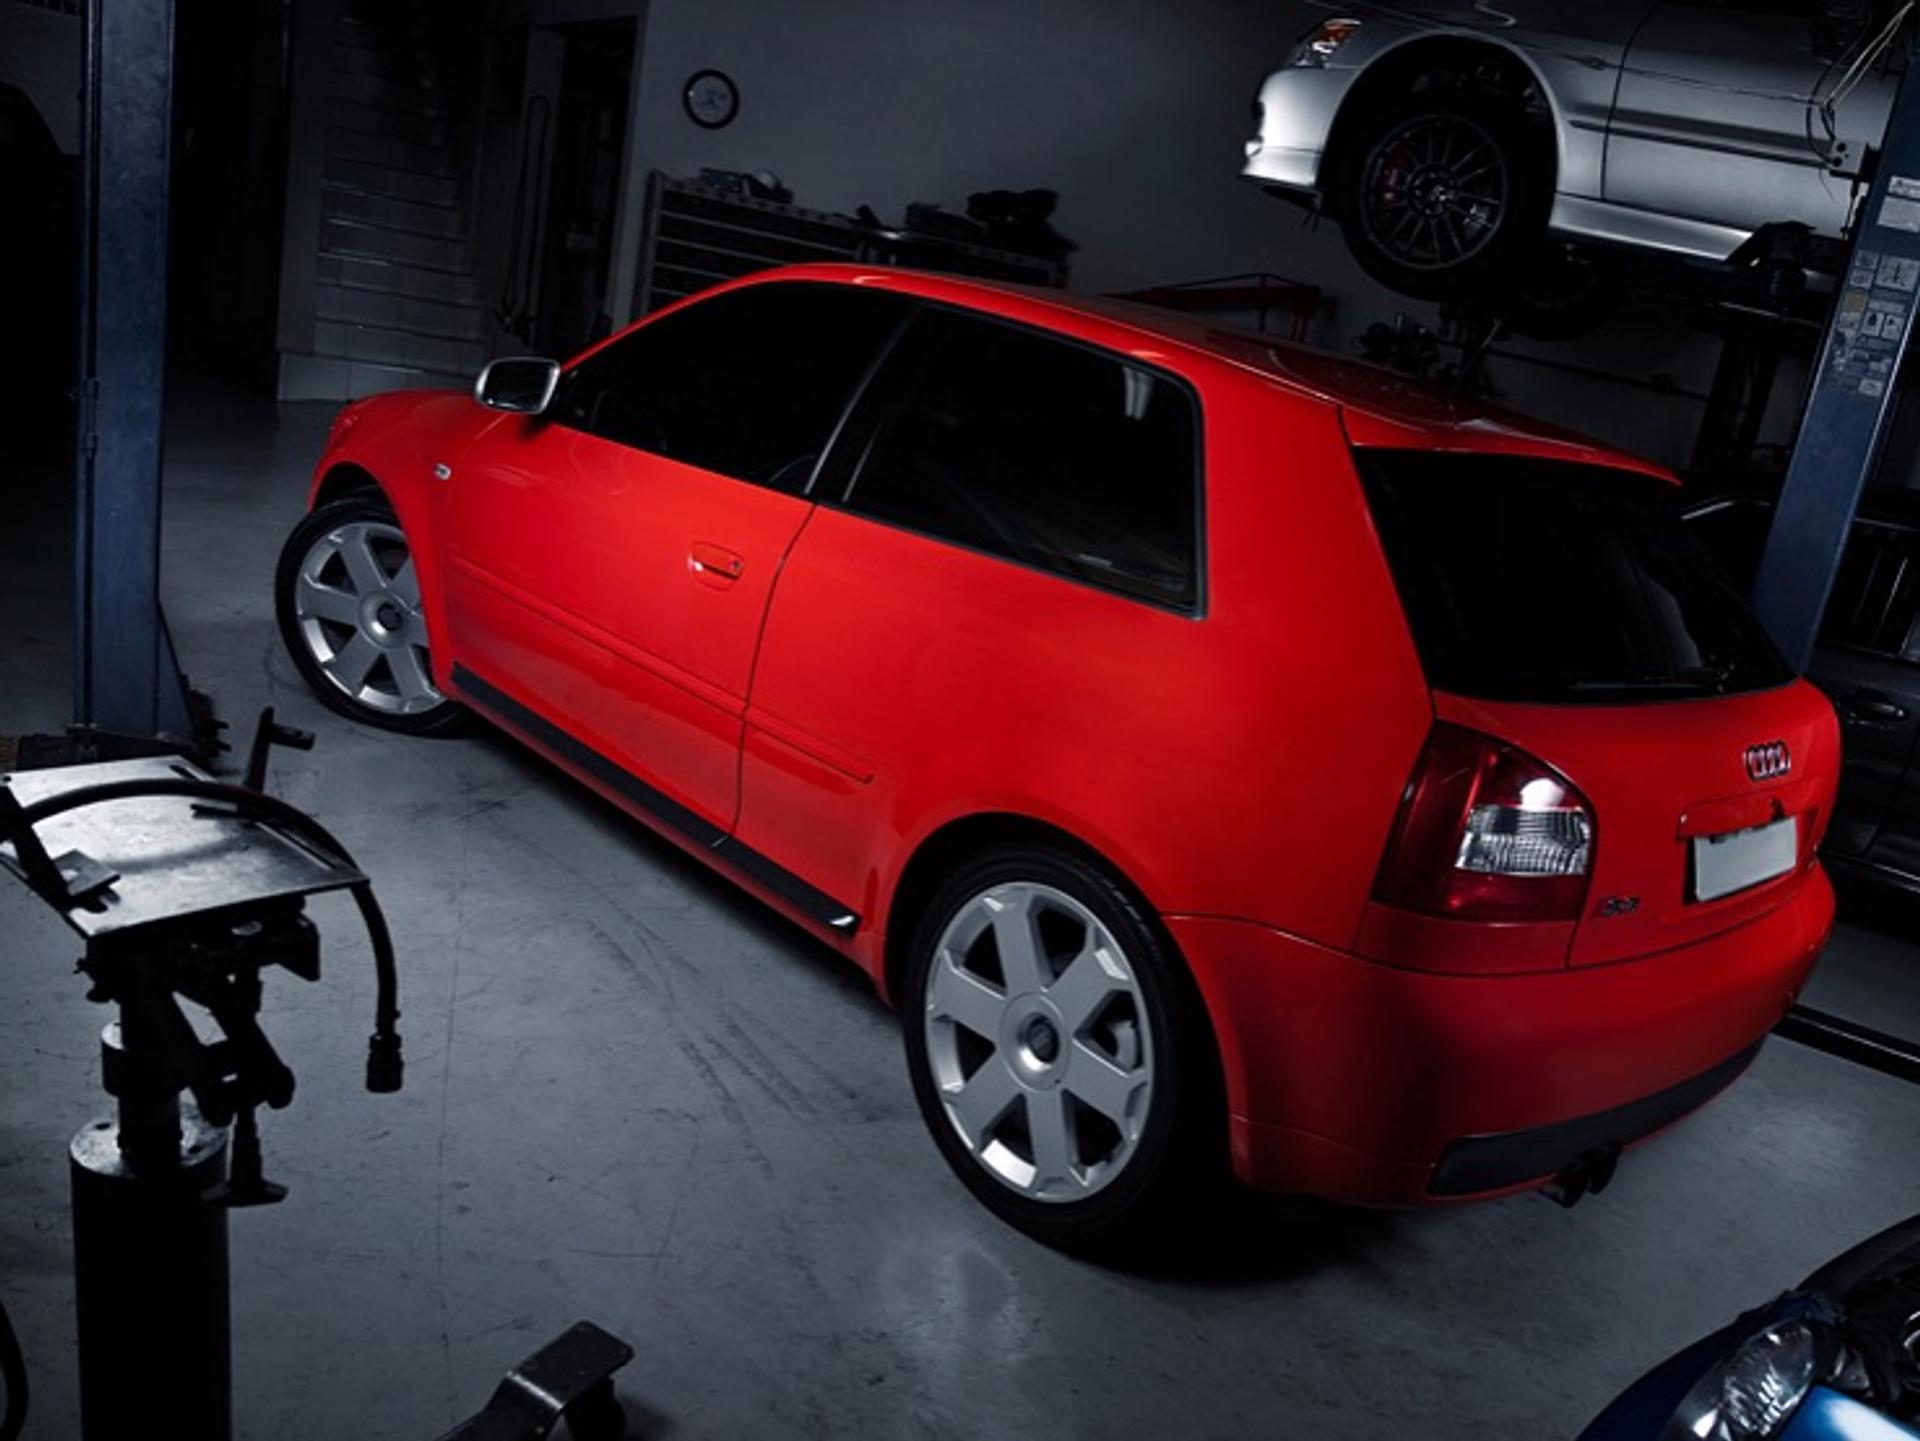 Audi-in-a-garage